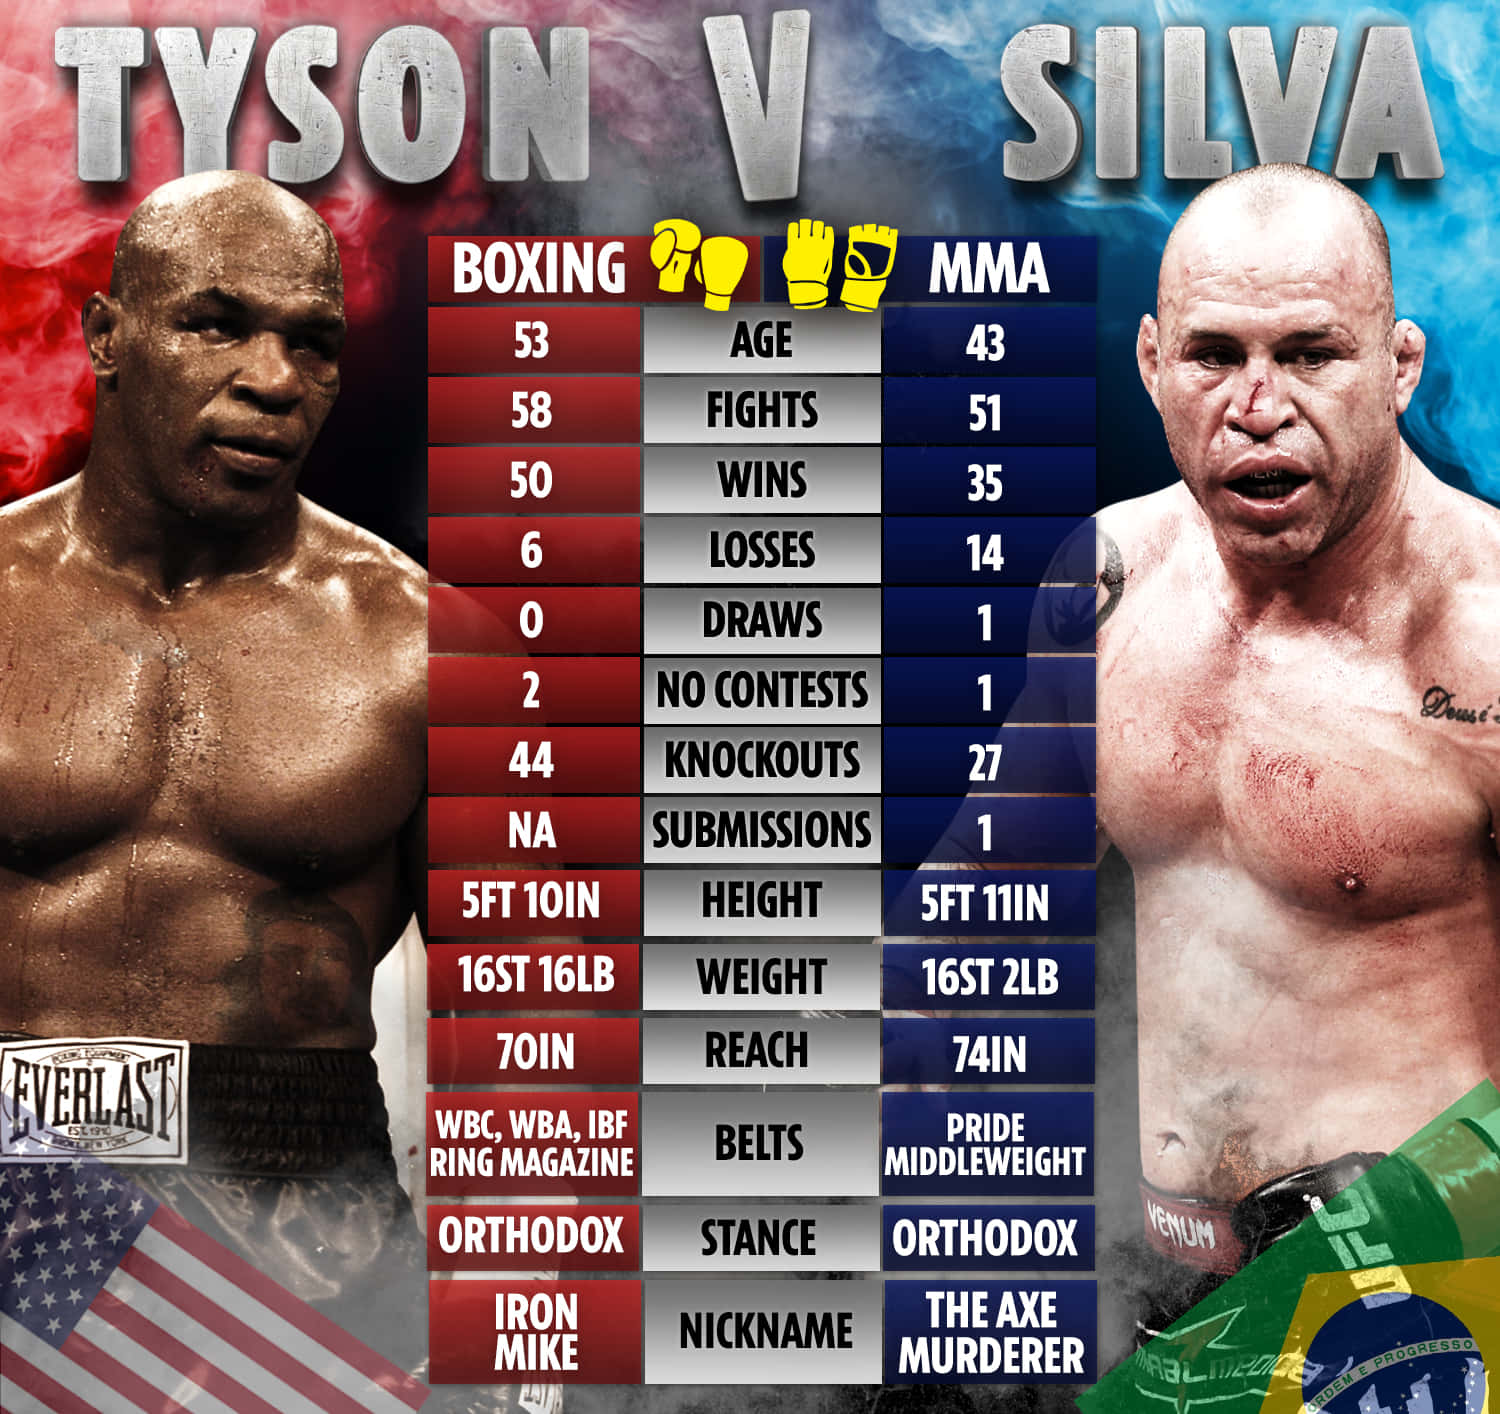 Mixed Martial Artist Wanderlei Silva Versus Legend Mike Tyson Face-Off Wallpaper